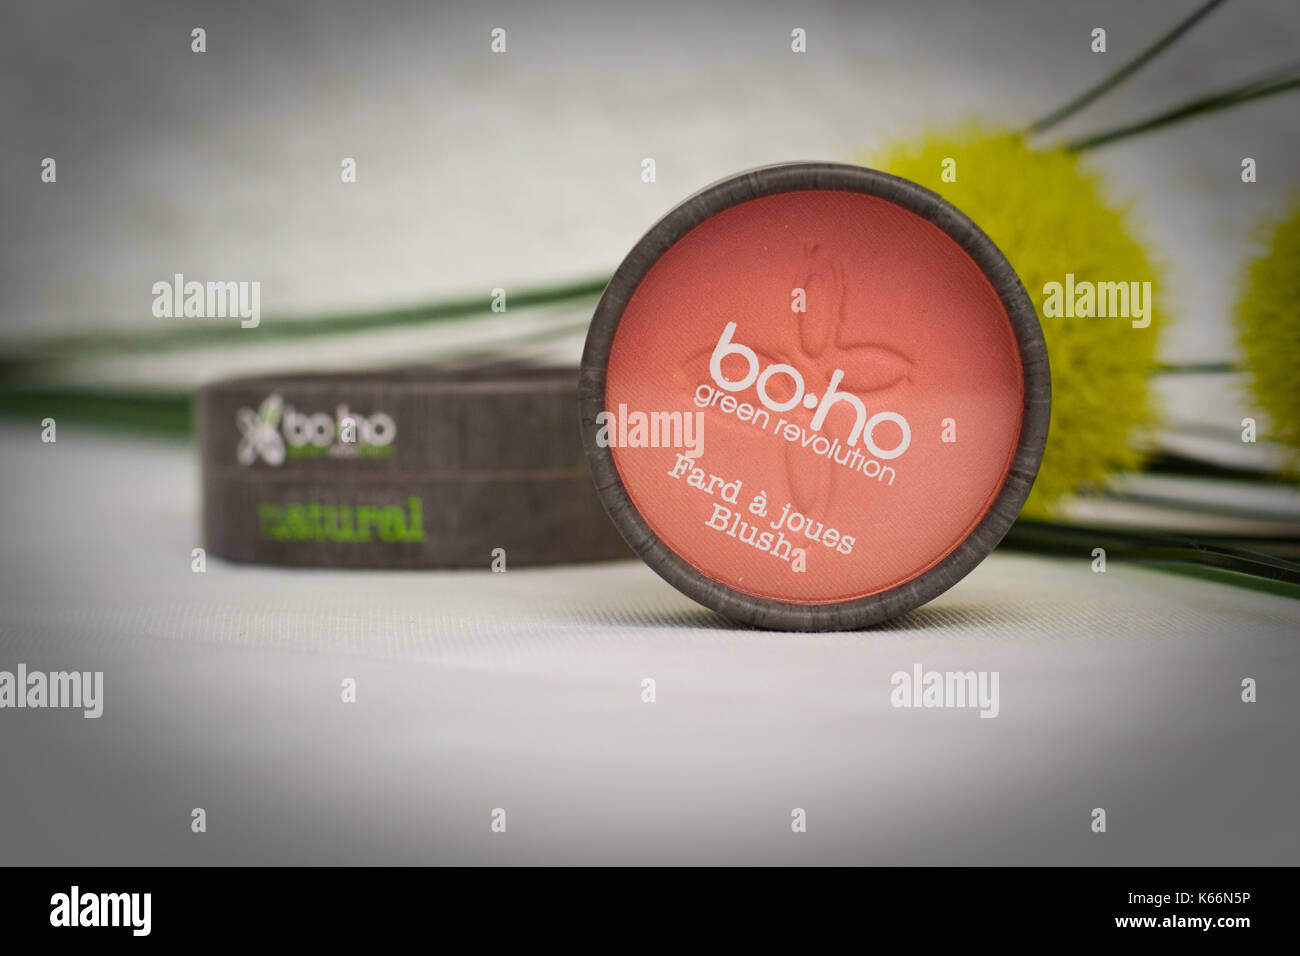 boho make up natural products Stock Photo